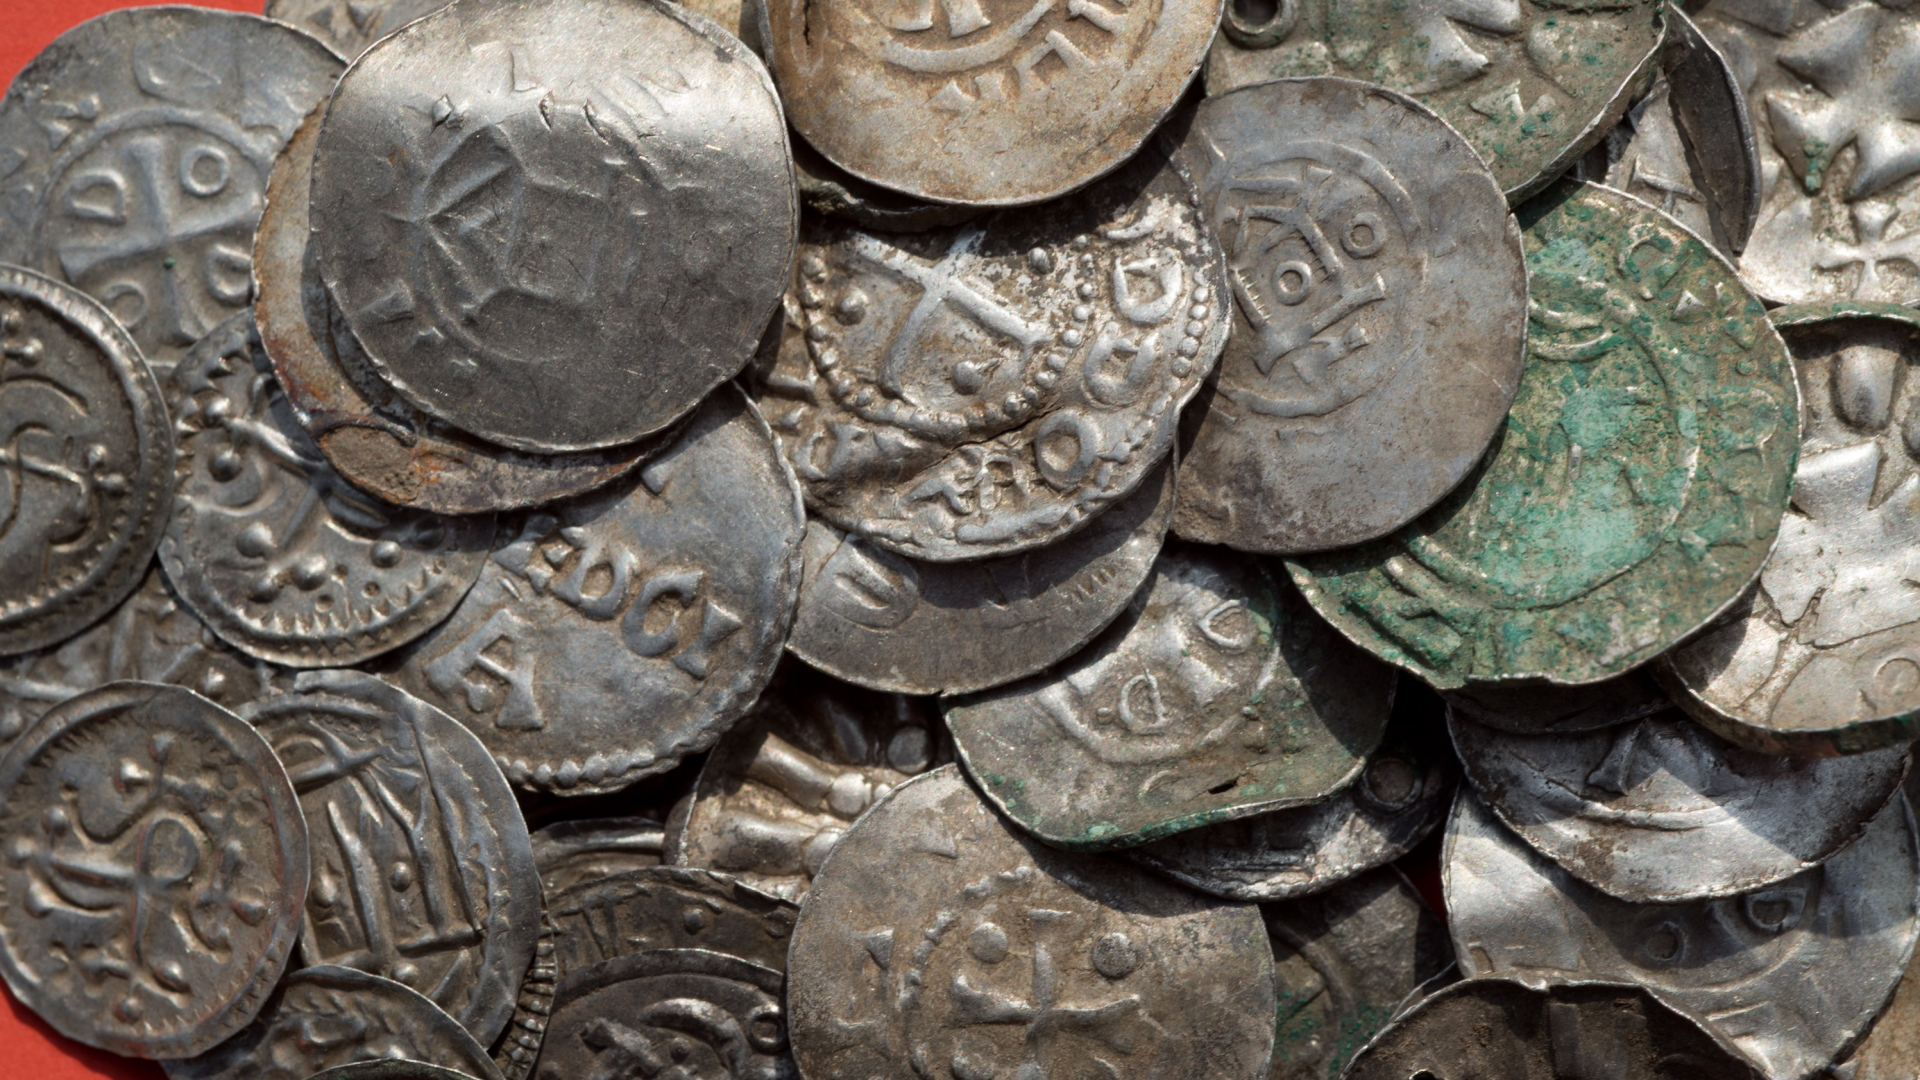 Zusammenstellung von sächsischen, ottonischen, dänischen und byzantinischen Münzen, die auf Rügen gefunden wurden. | dpa